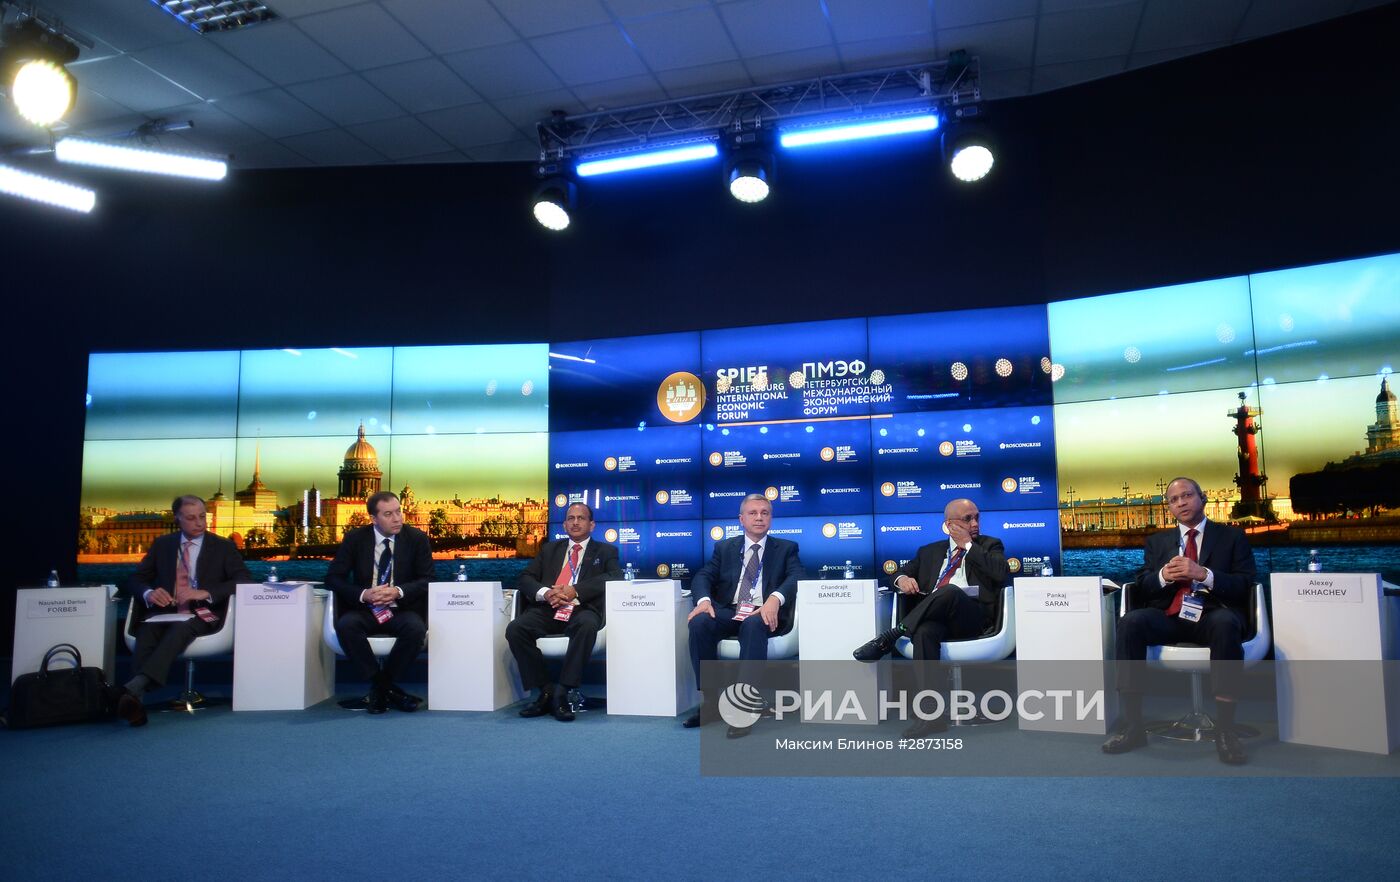 Круглый стол "Россия - Индия: новый этап экономического партнерства" в рамках ПМЭФ